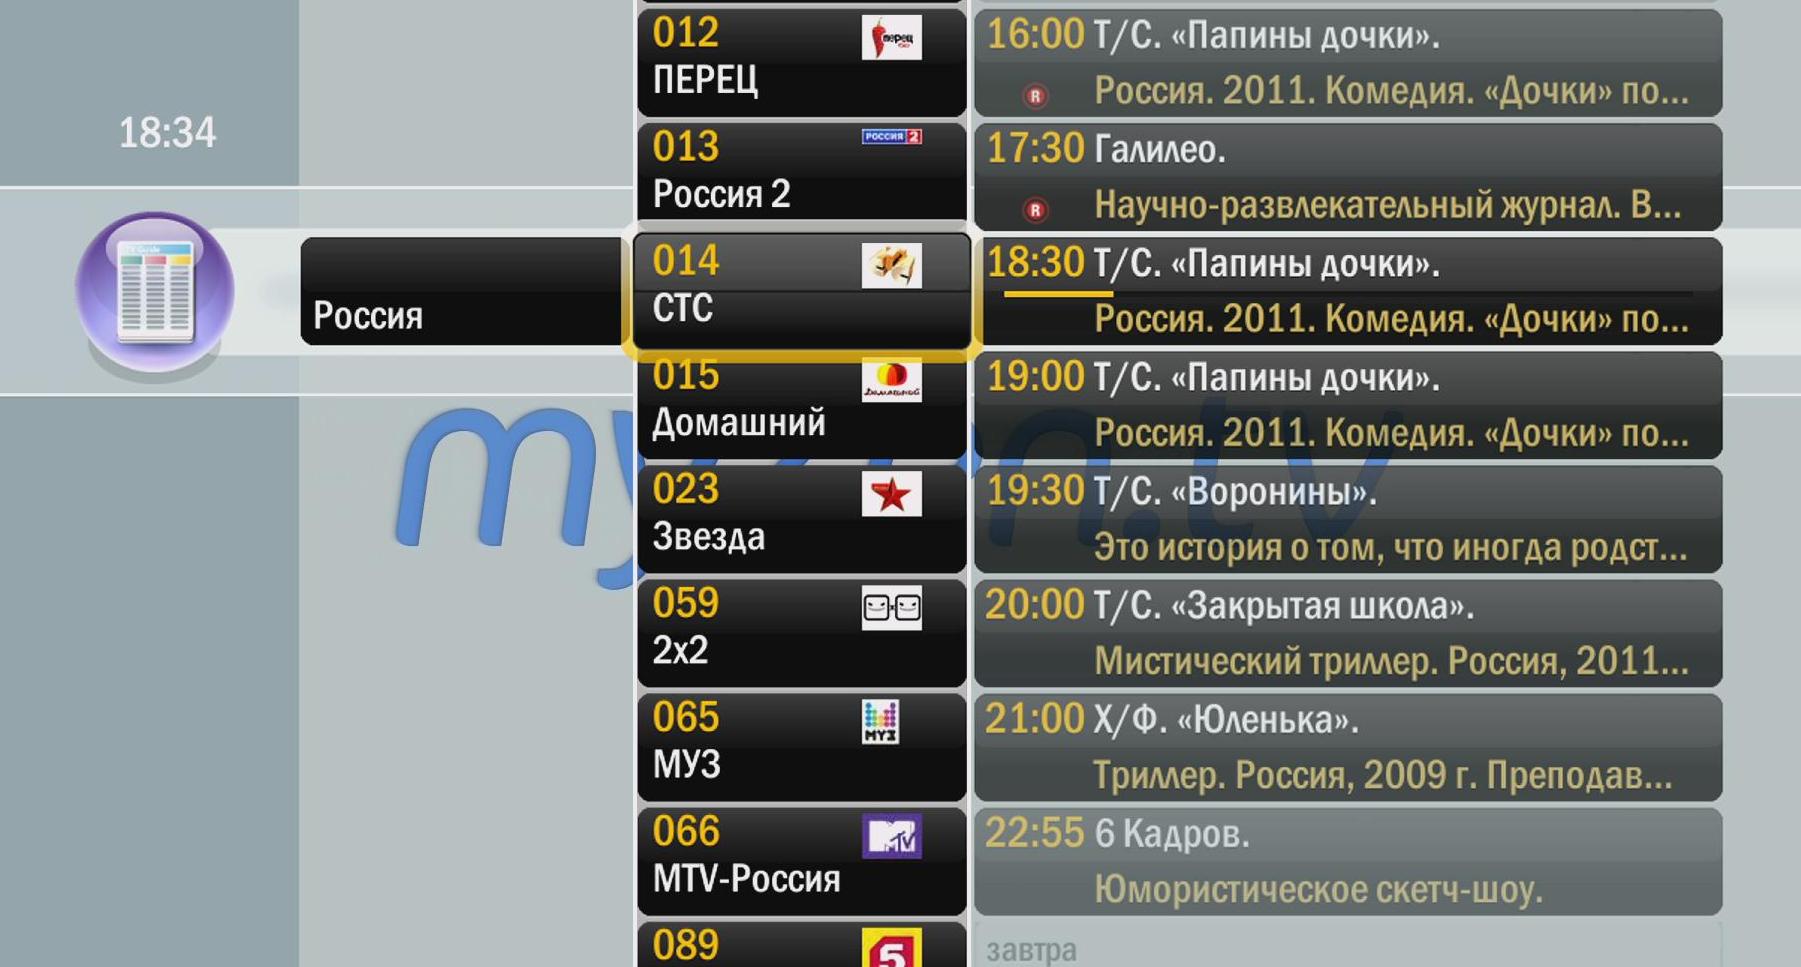 Программа передач канала москва 24